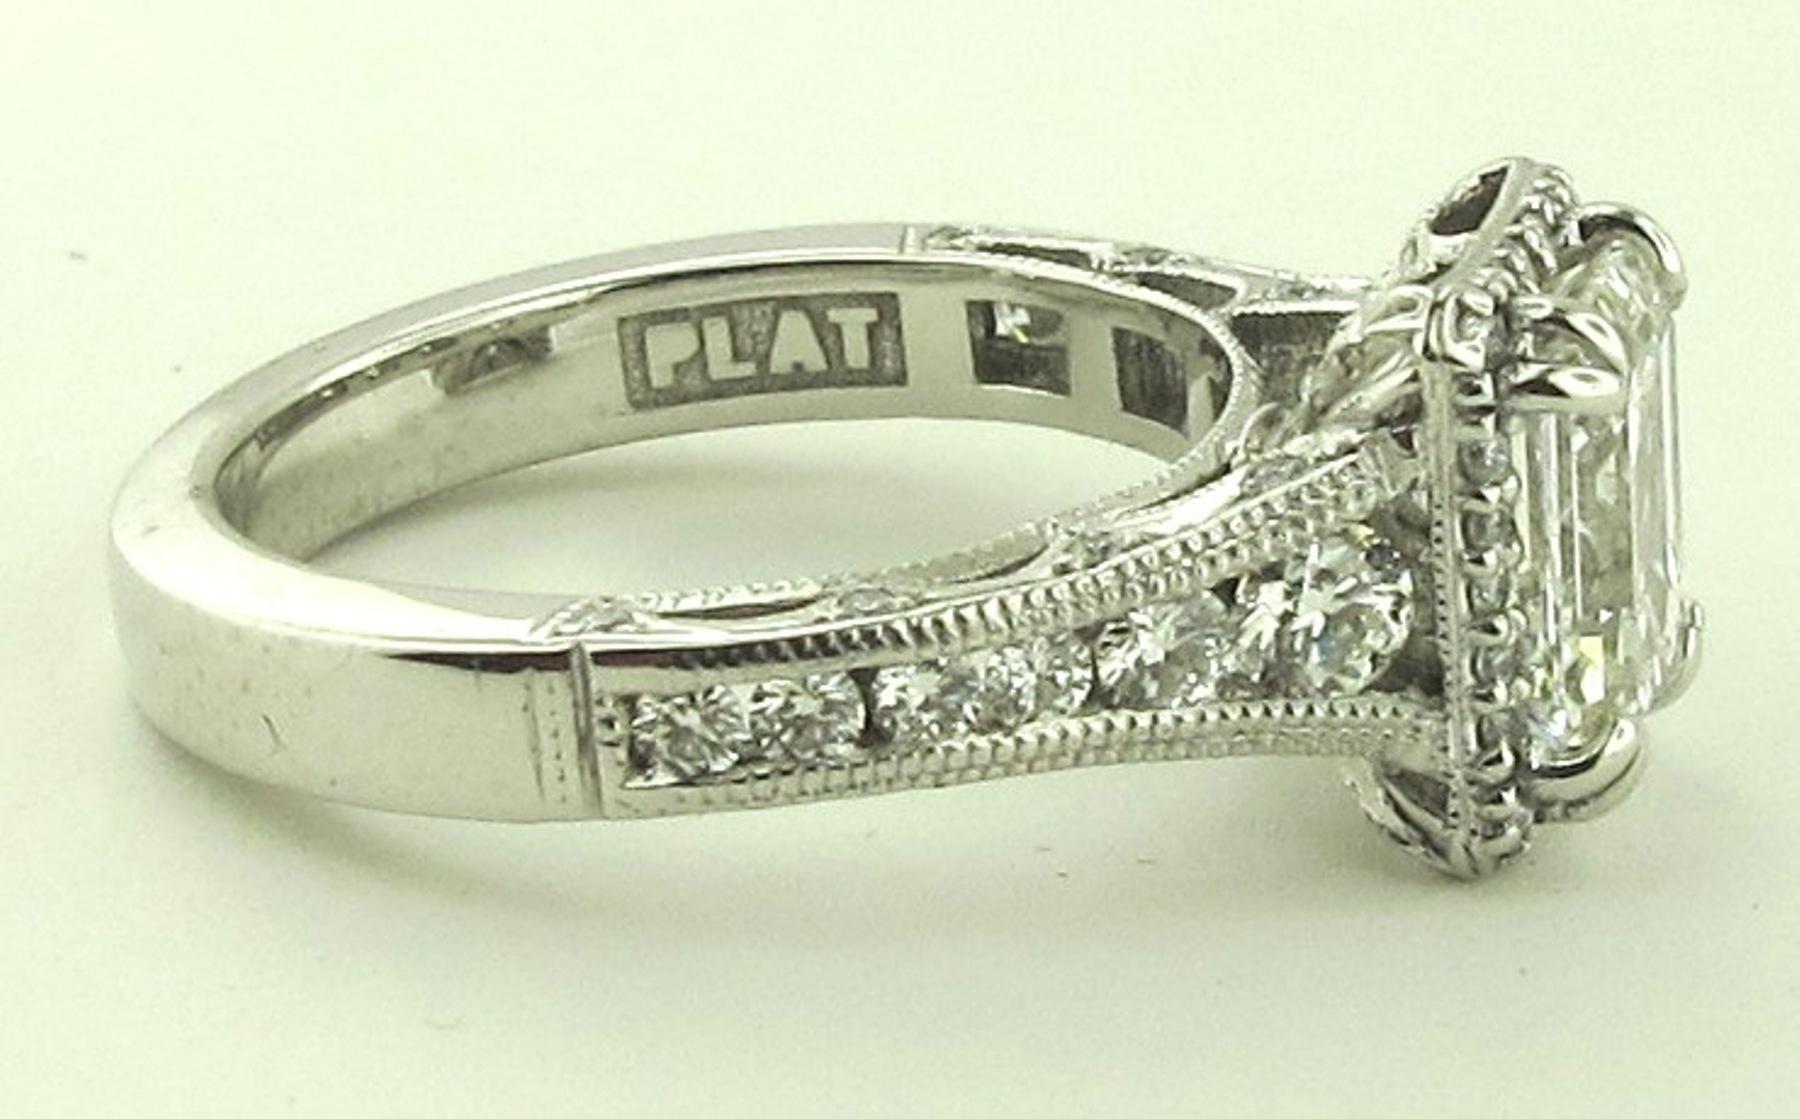 2.02 Carat Emerald Cut Diamond Ring in 18 Karat White Gold Tacori Plat Mounting 1